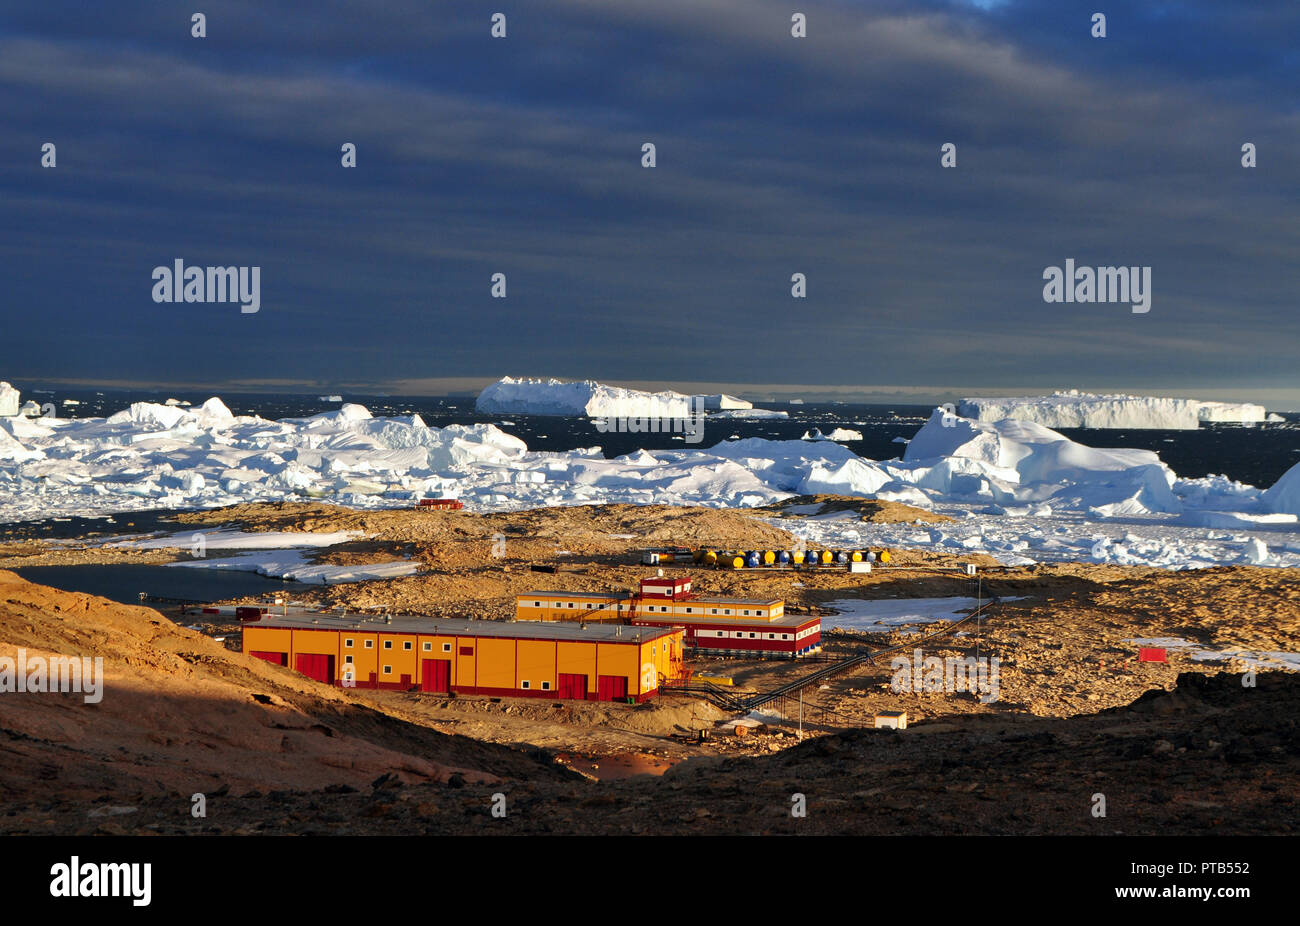 La pointe de l'iceberg, la glace, le soleil brille à travers. Close-up. L'antarctique. Banque D'Images